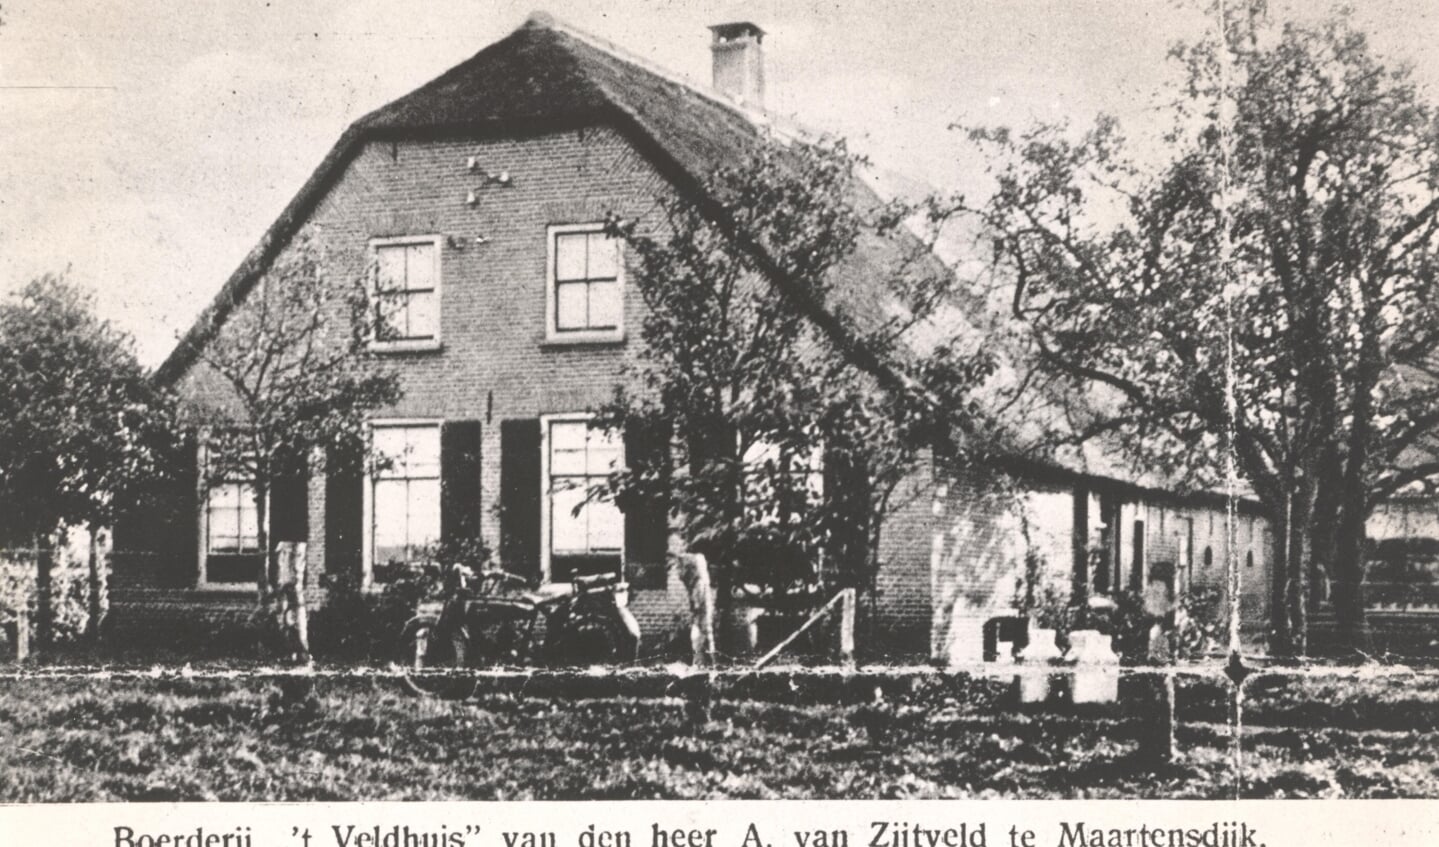 Duitse soldaten waren ingekwartierd op boerderij ’t Veldhuis van de heer van Zijtveld in Maartensdijk. (foto uit de digitale verzameling van Rienk Miedema)